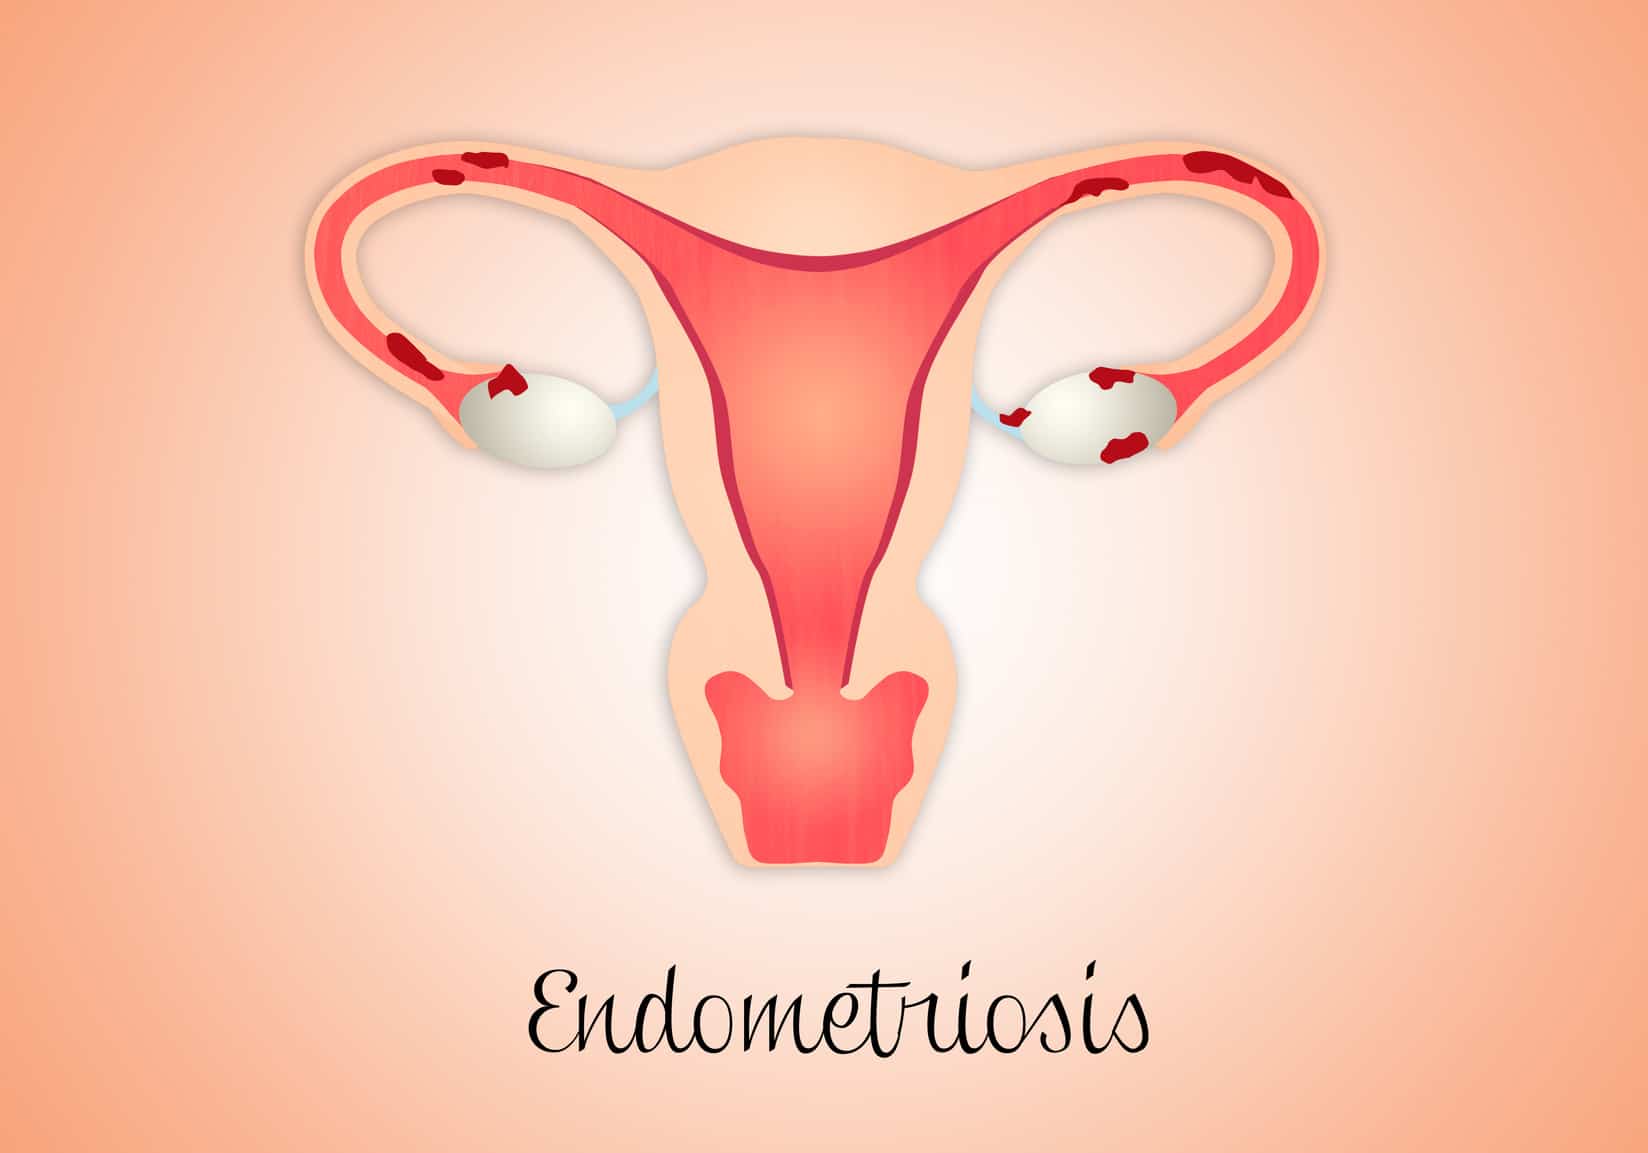 El A,B,C de la endometriosis